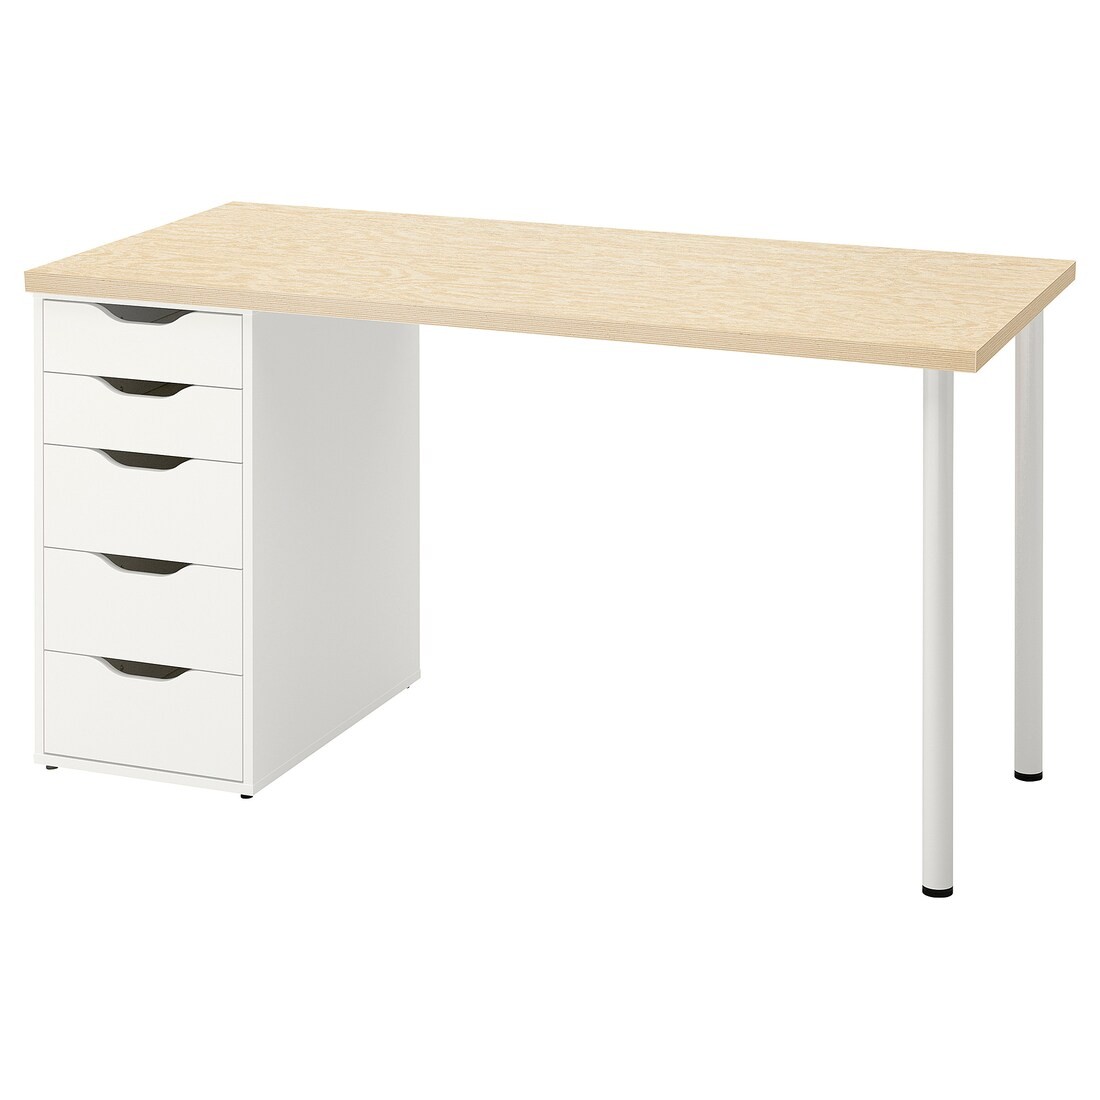 MITTCIRKEL / ALEX Письменный стол, яркий сосновый/белый эффект, 140x60 см